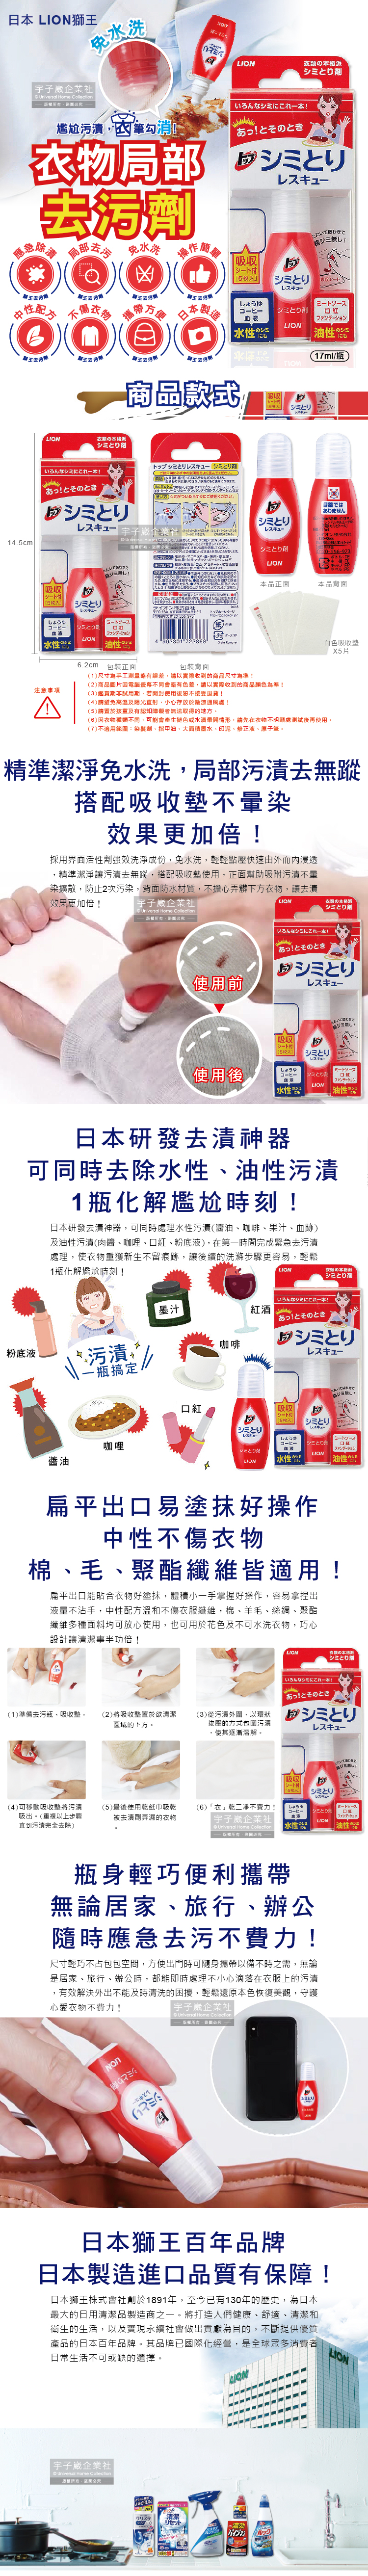 (清潔-衣物)日本LION獅王-衣物去污劑17ml瓶介紹圖